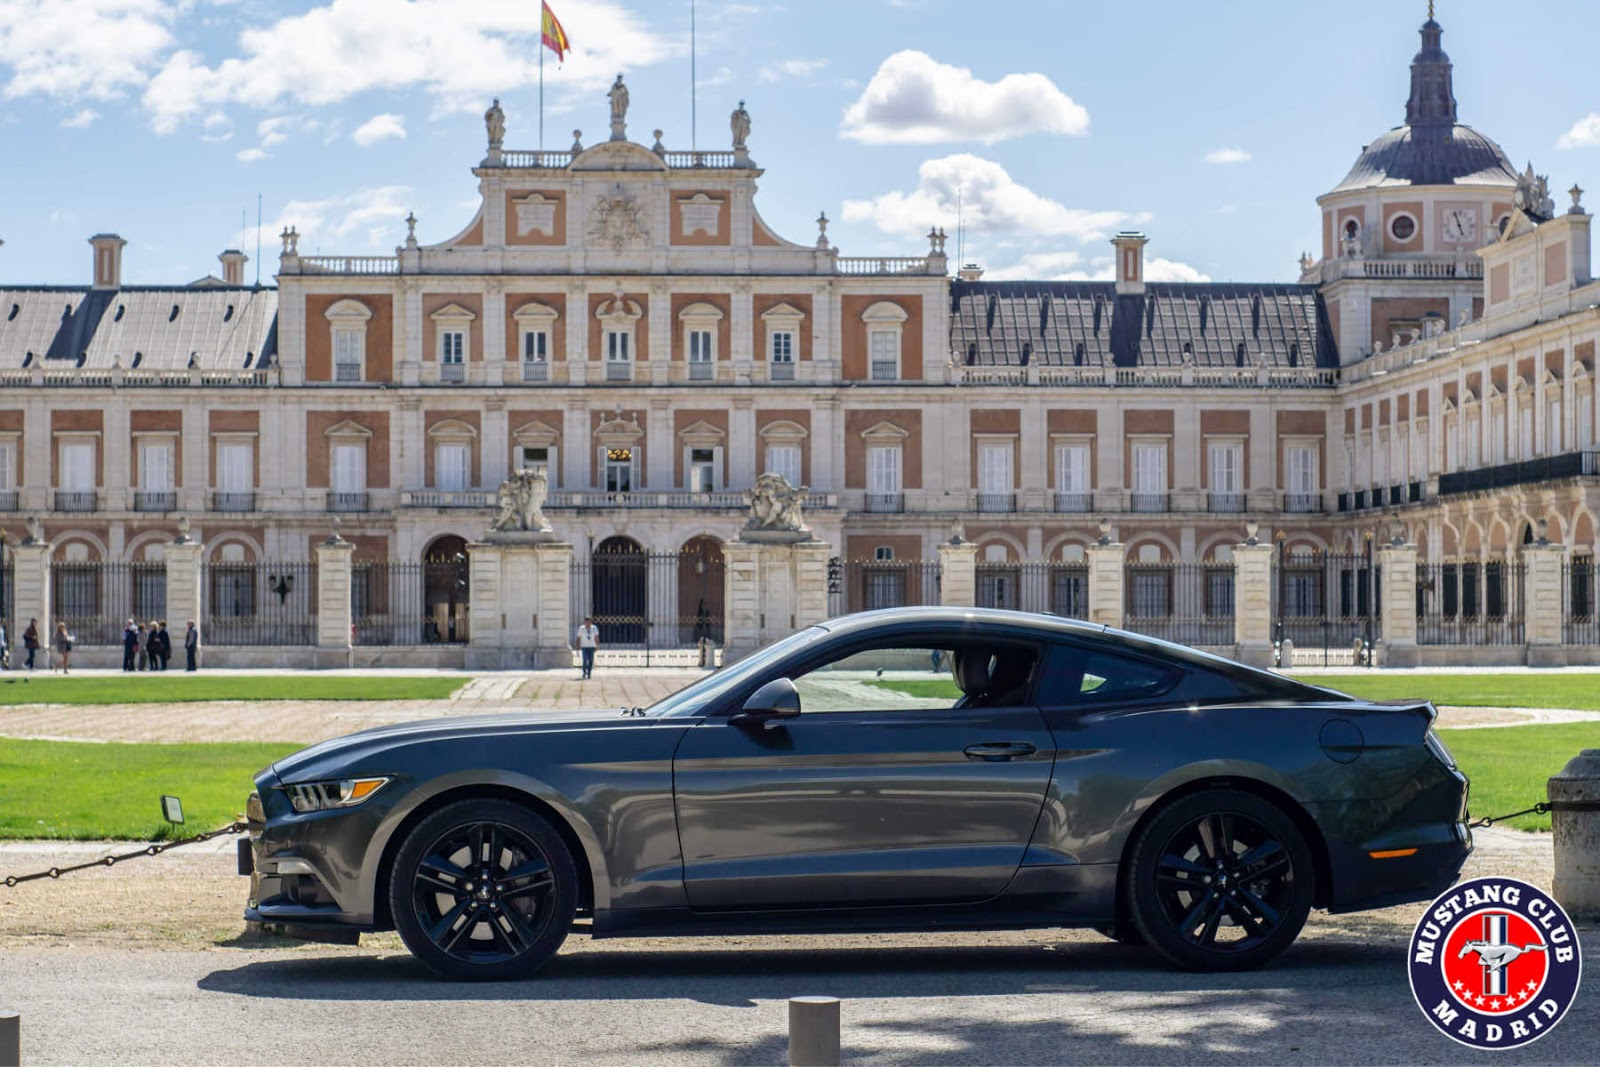 Hizo un contrato frío cuscús Mustangs in Action: Aranjuez, música para los sentidos | Mustang Club Madrid